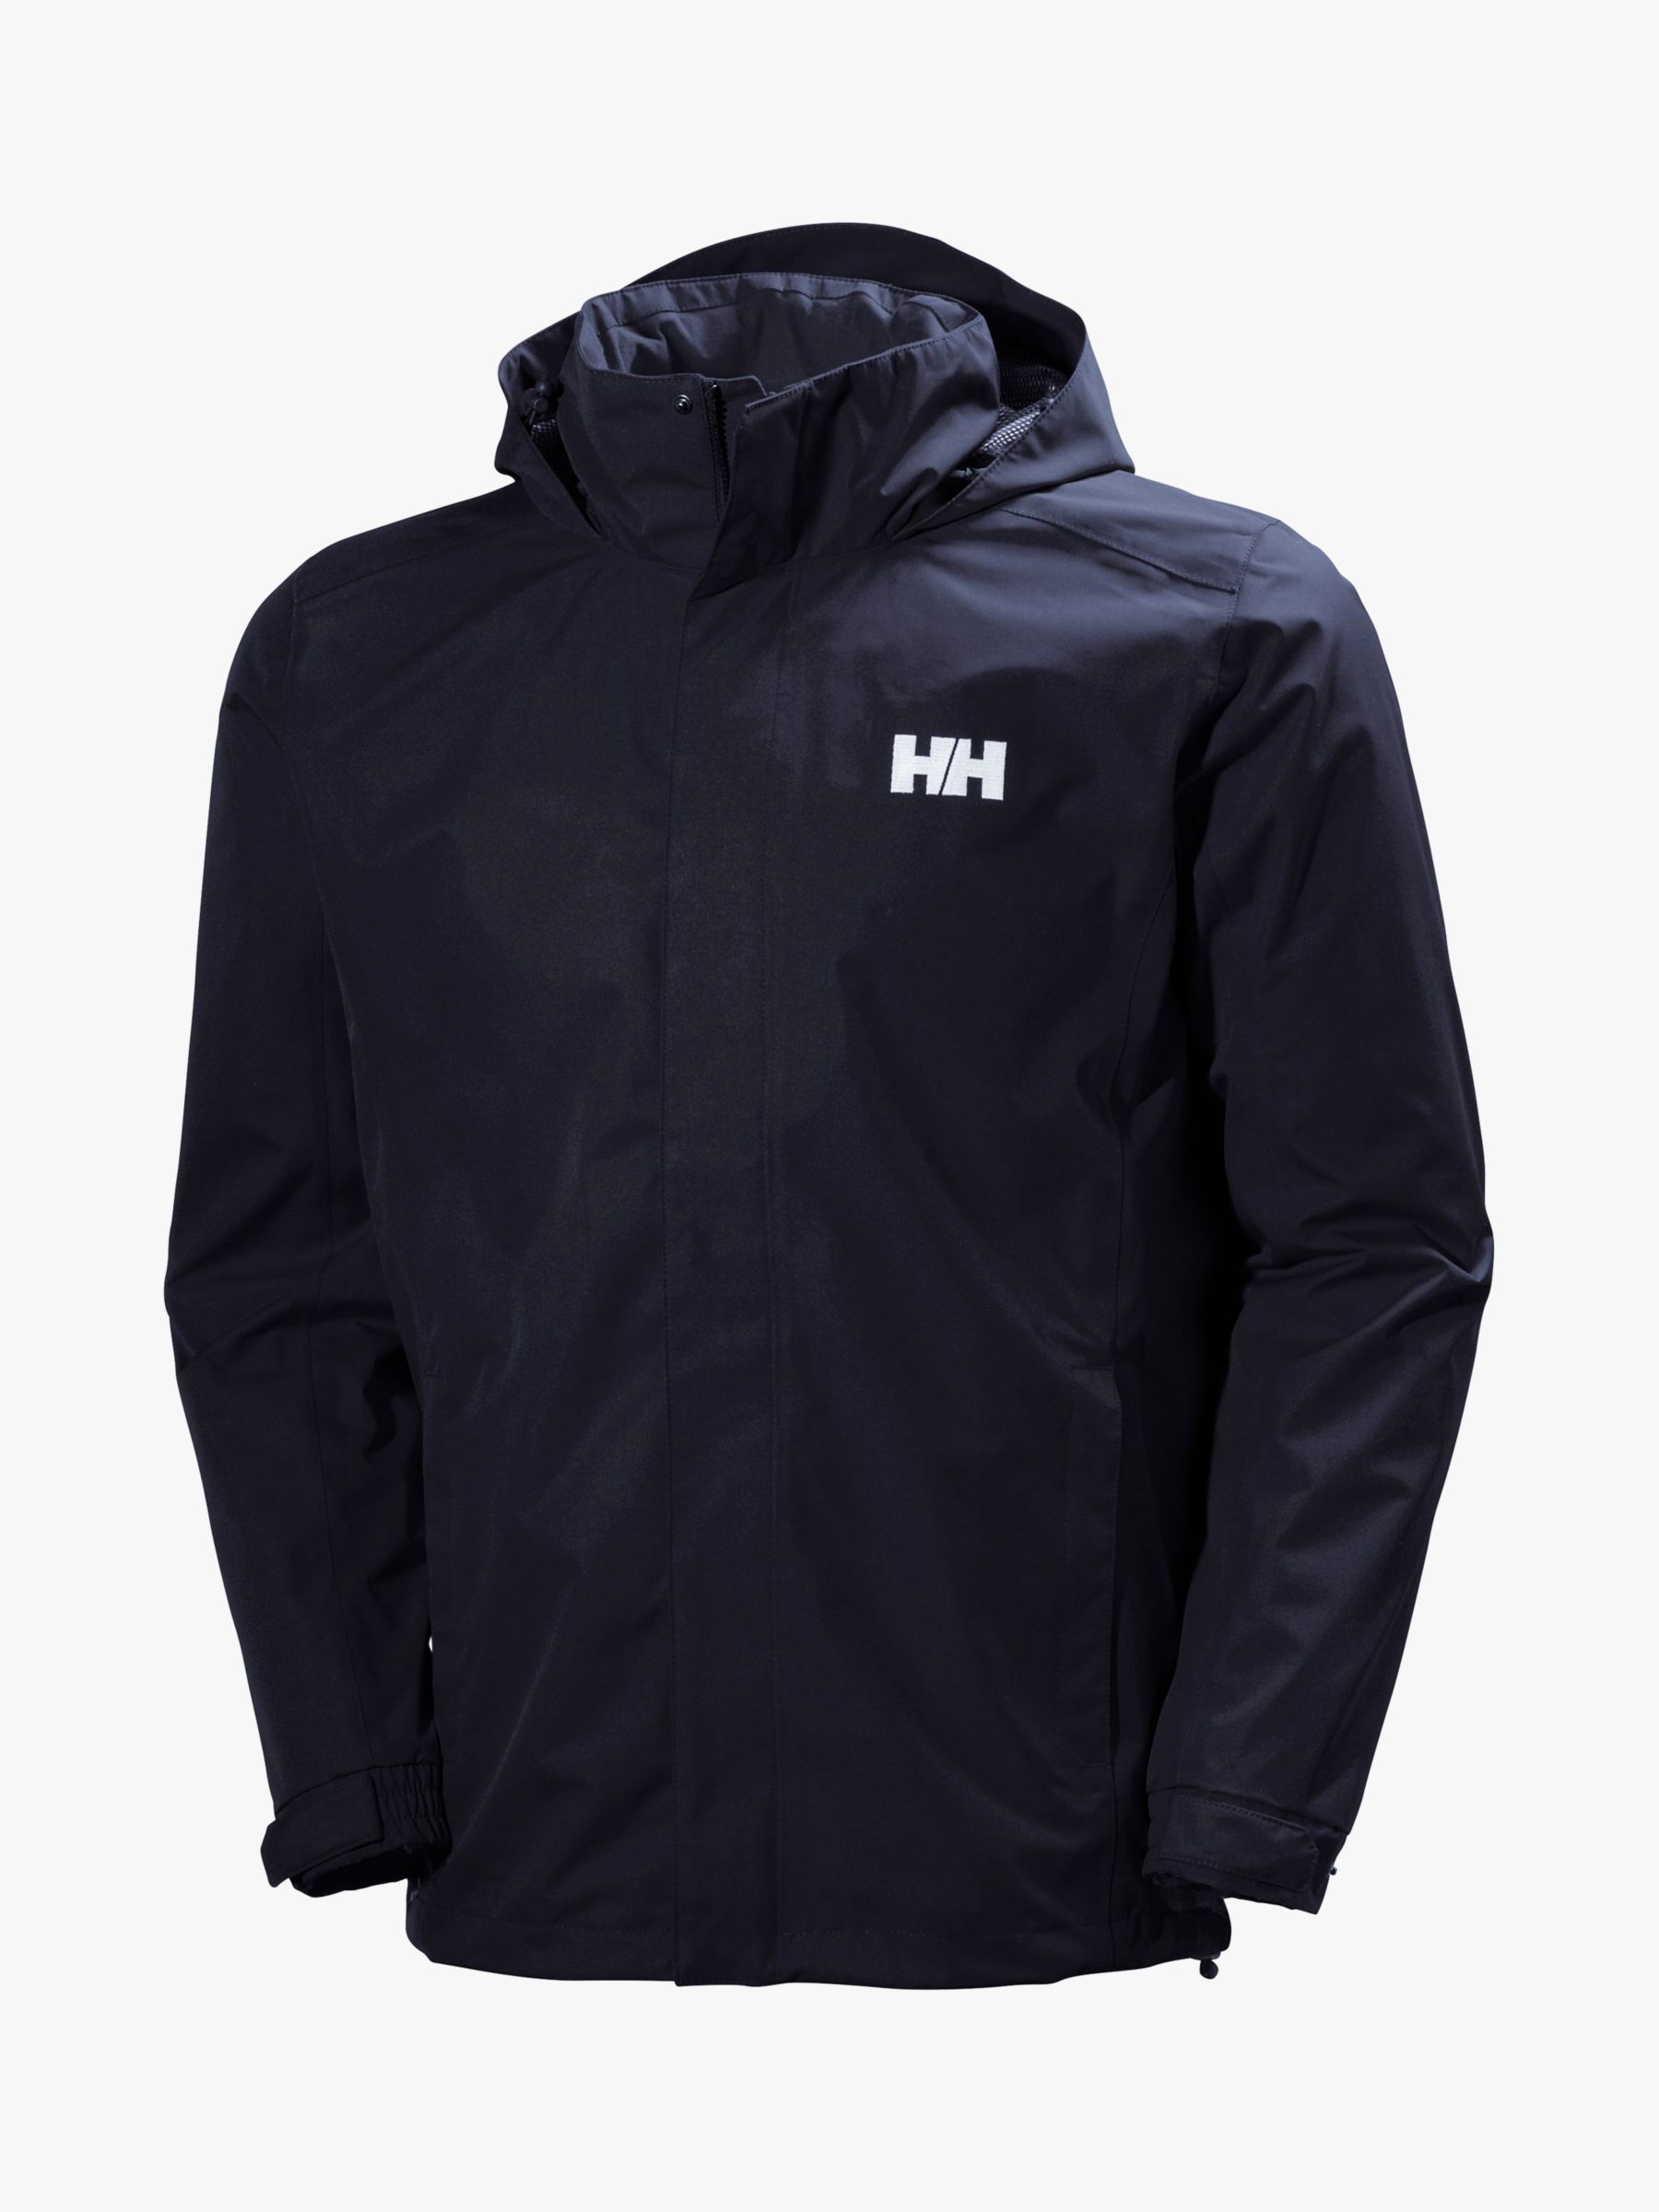 Helly Hansen Dubliner Men's Waterproof Jacket, Navy, S